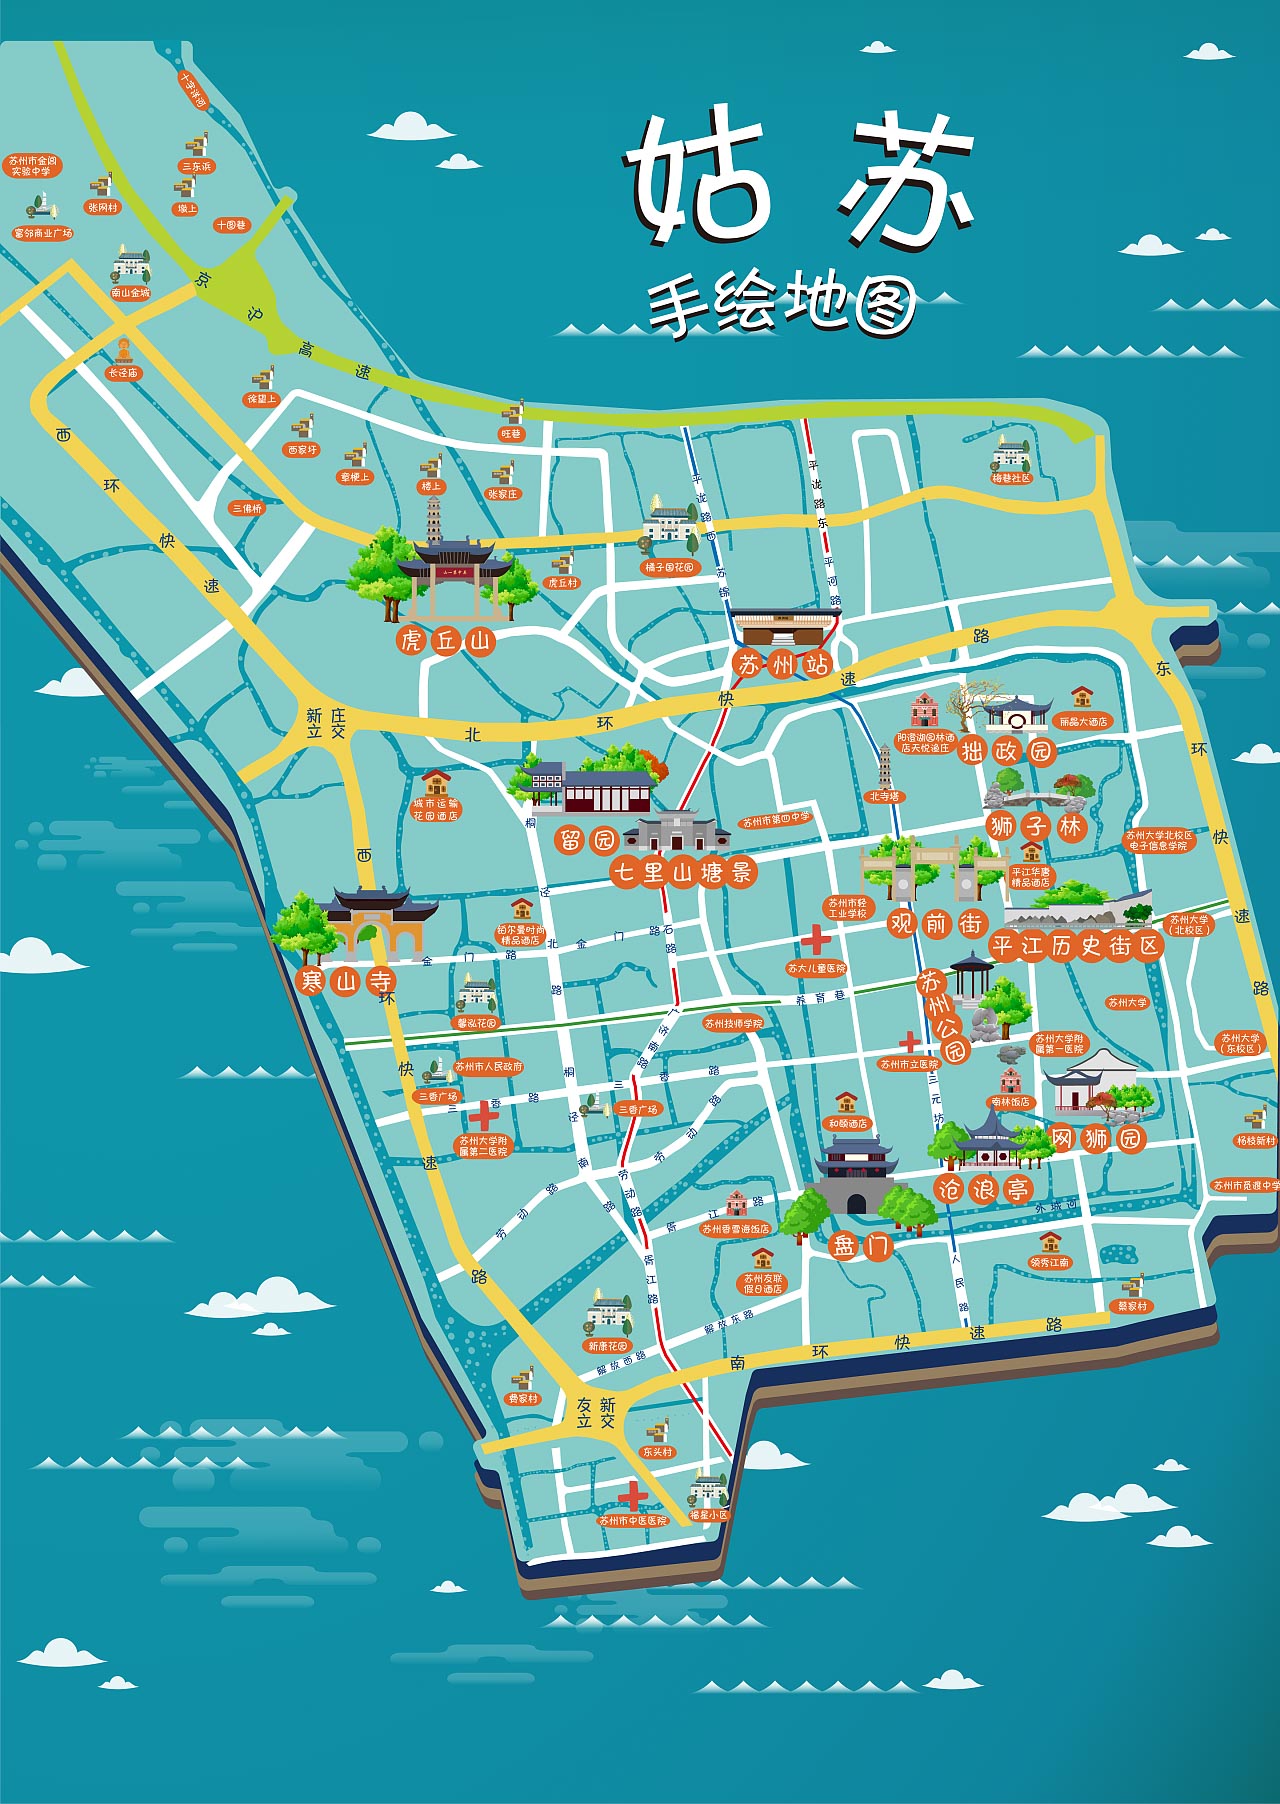 杨市办事处手绘地图景区的文化宝藏